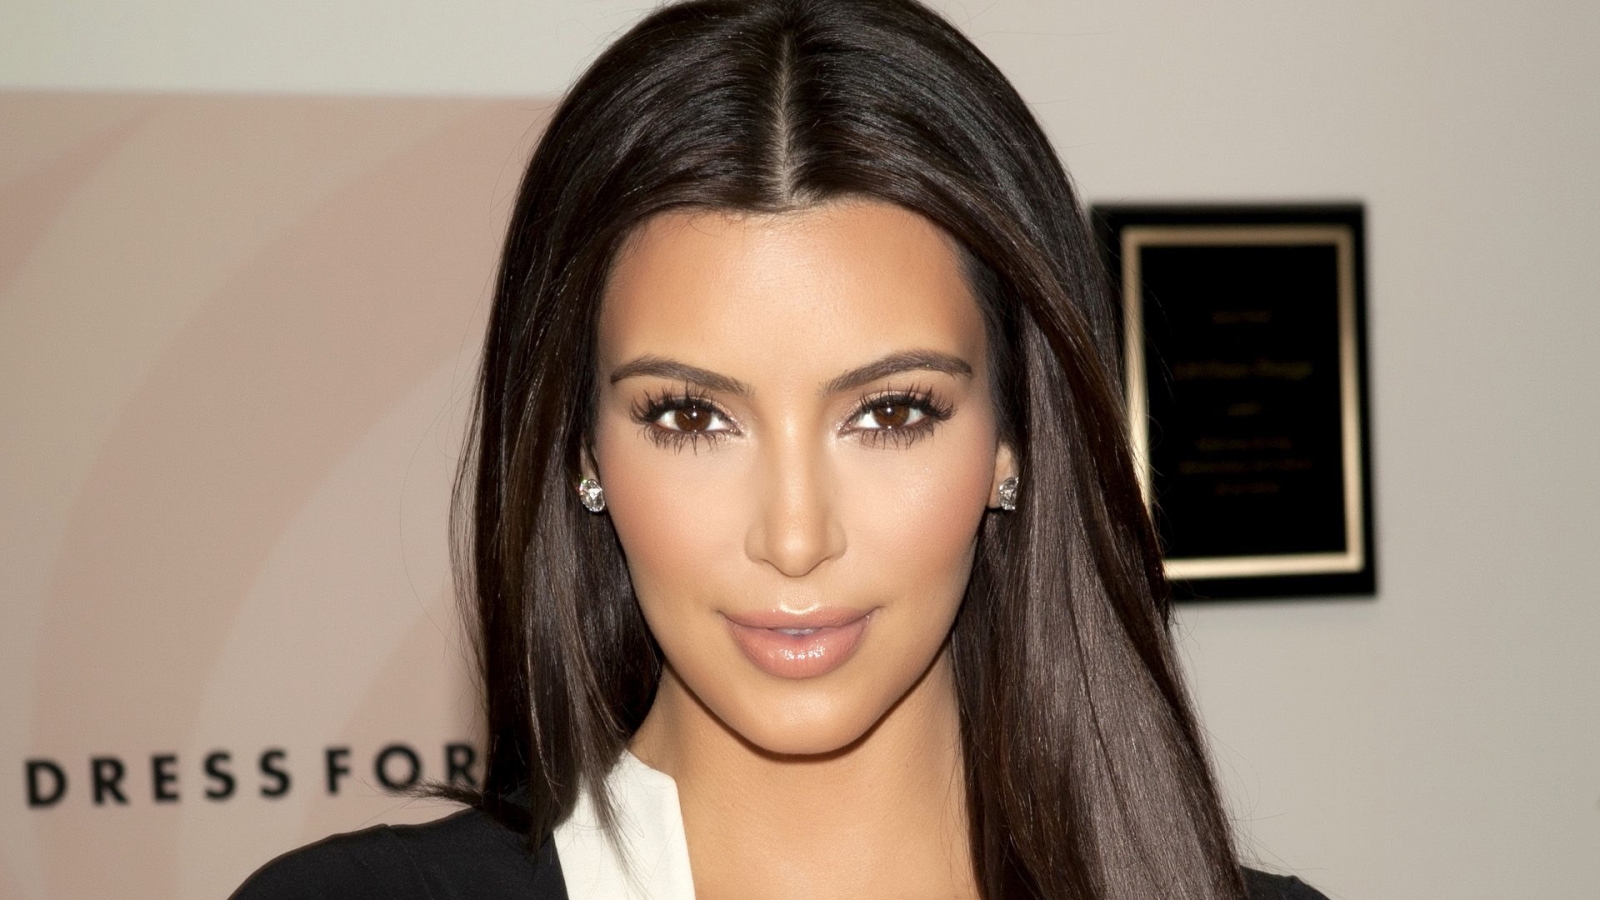 Gorgeous Kim Kardashian for 1600 x 900 HDTV resolution